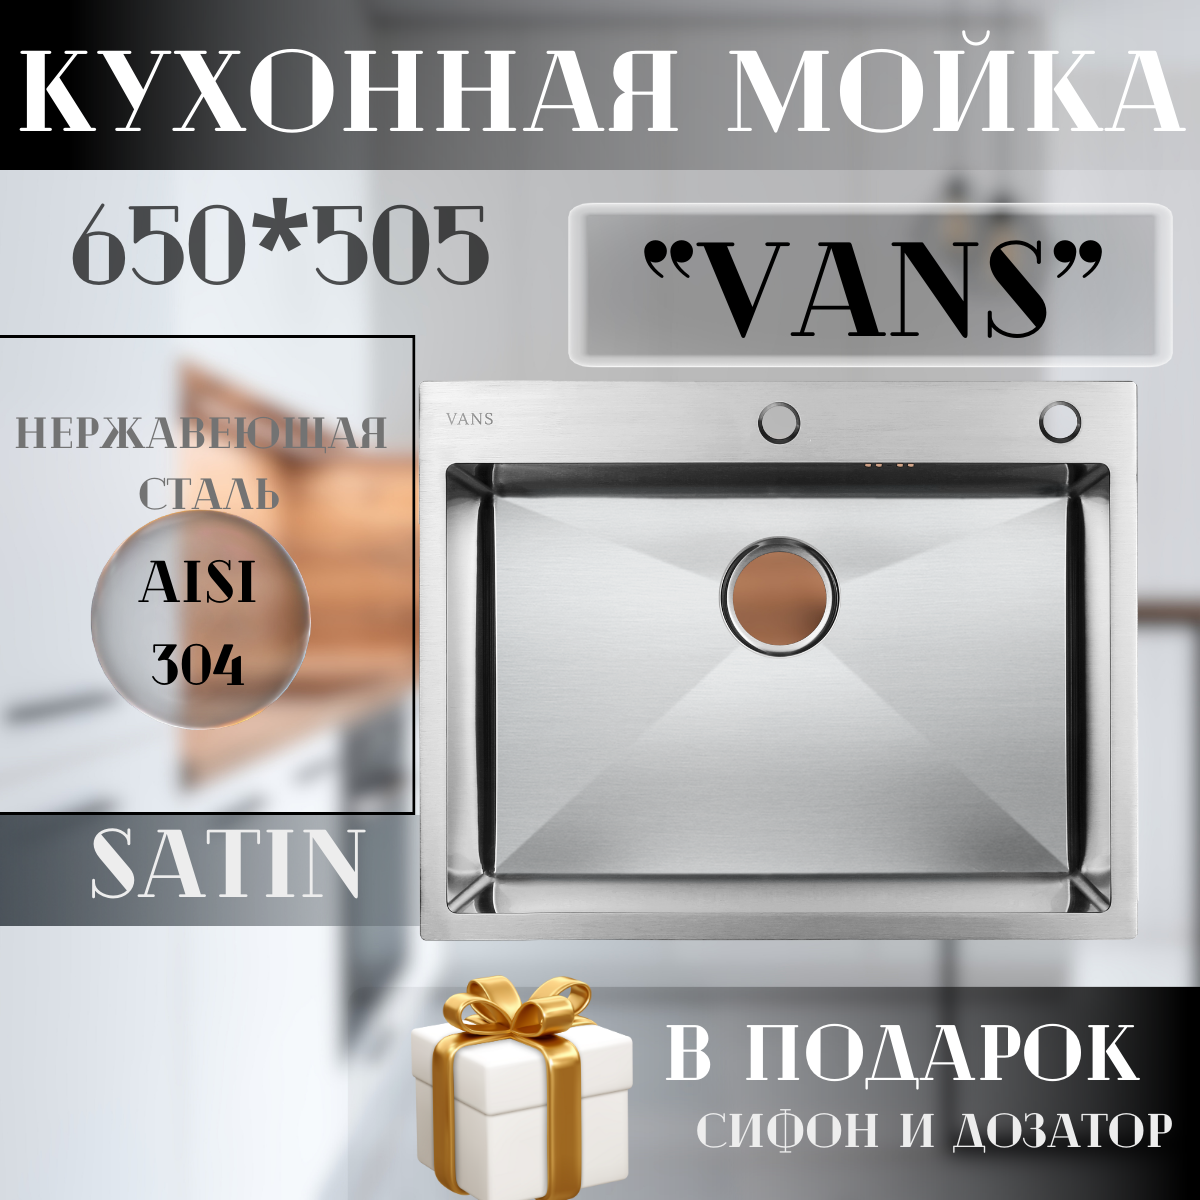 Кухонная мойка VANS 650*505 (650*505) Satin - фотография № 1